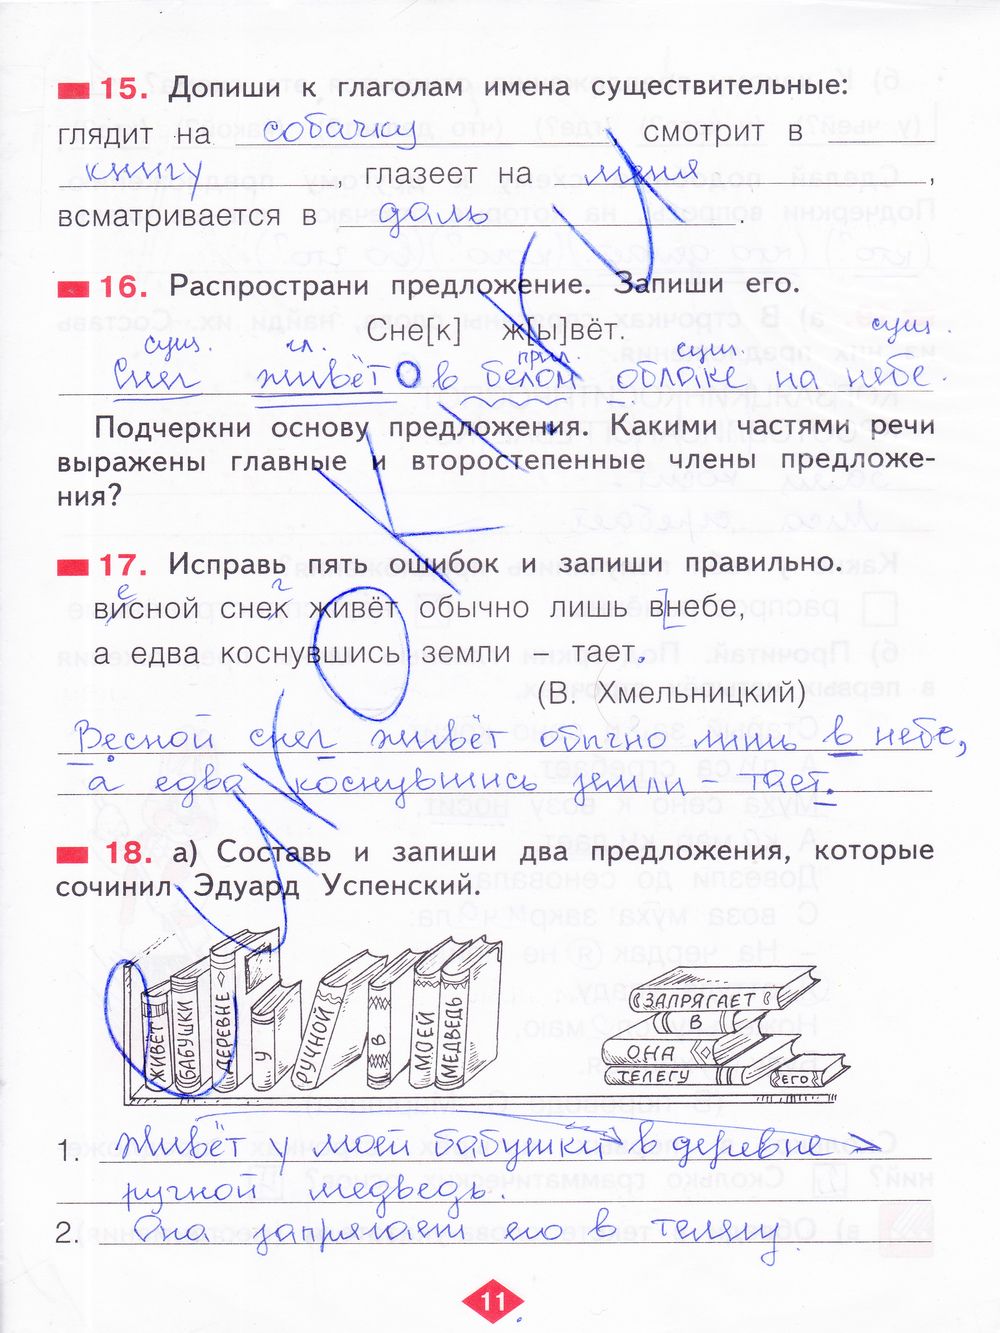 ГДЗ Русский язык 2 класс - стр. 11